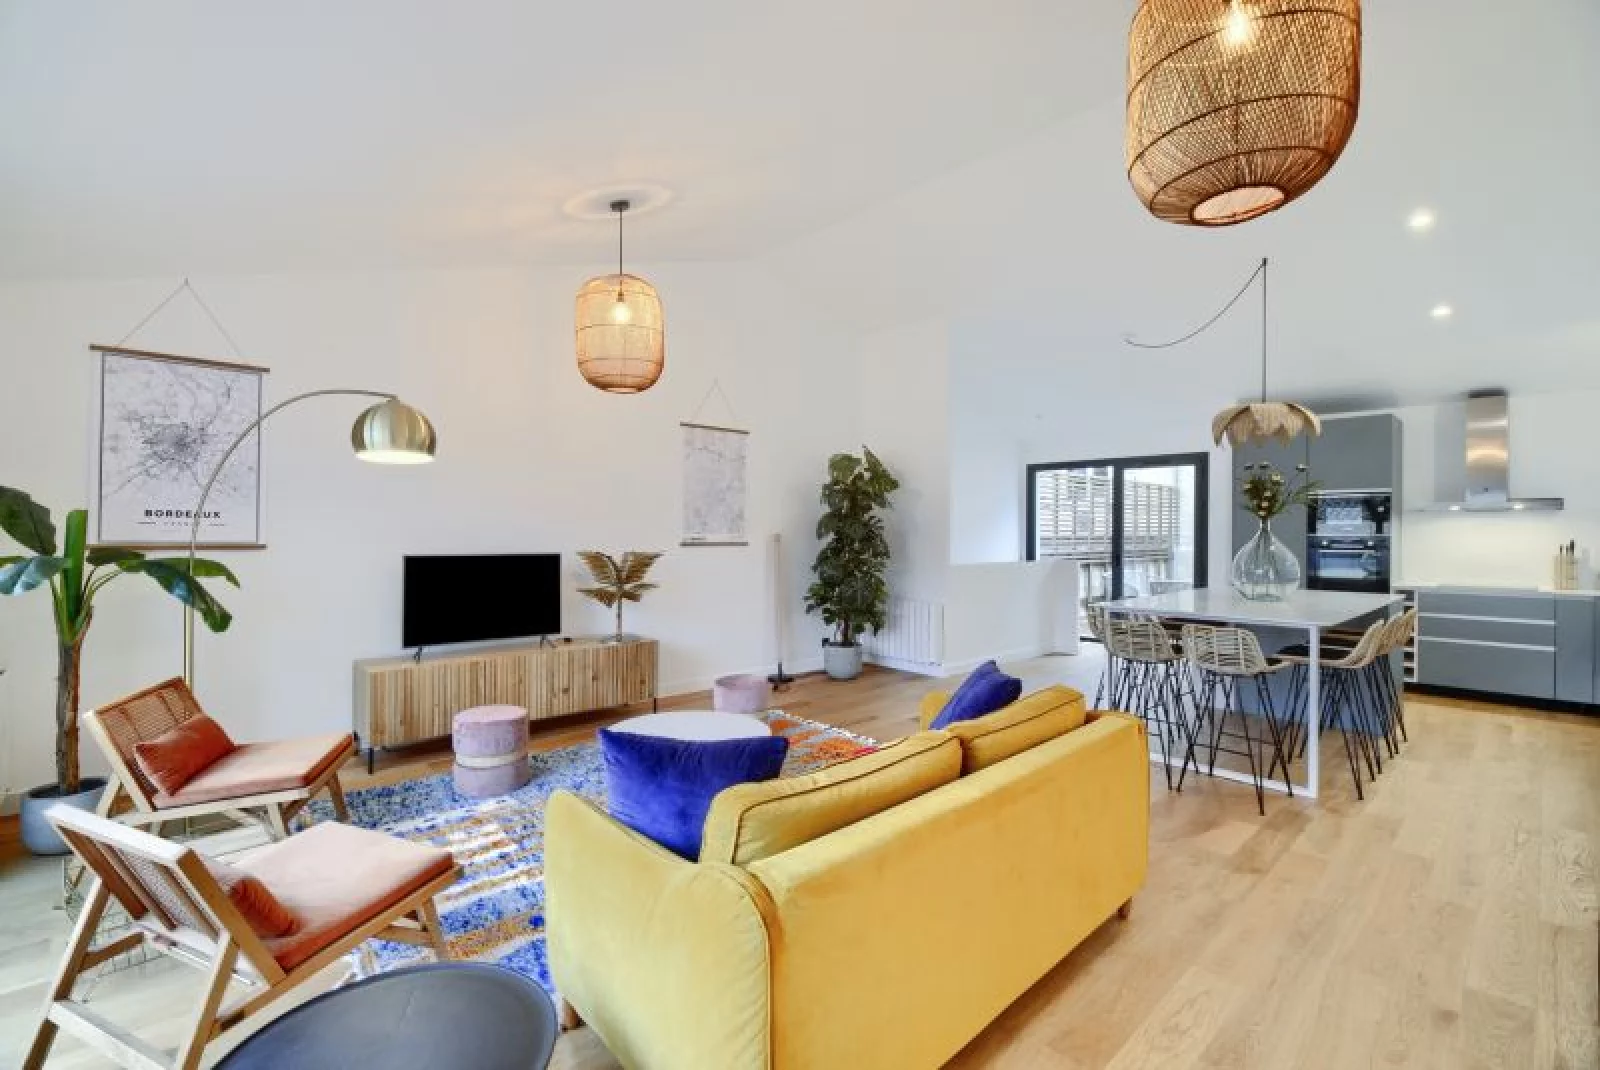 Location appartement duplex meublé 4 pièces de 110m² (Bordeaux - Chartrons)